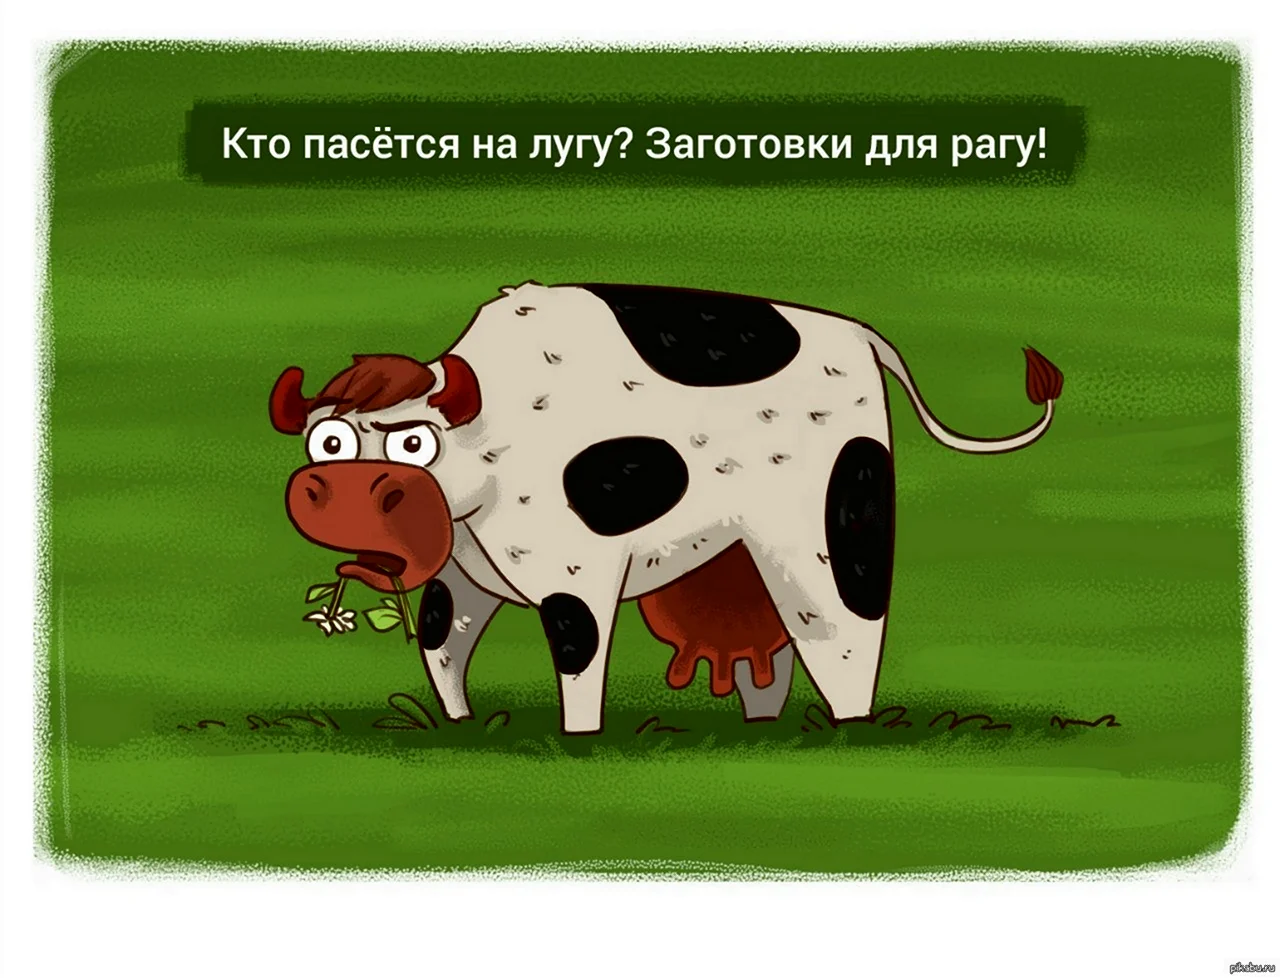 Шутки про коров. Картинка